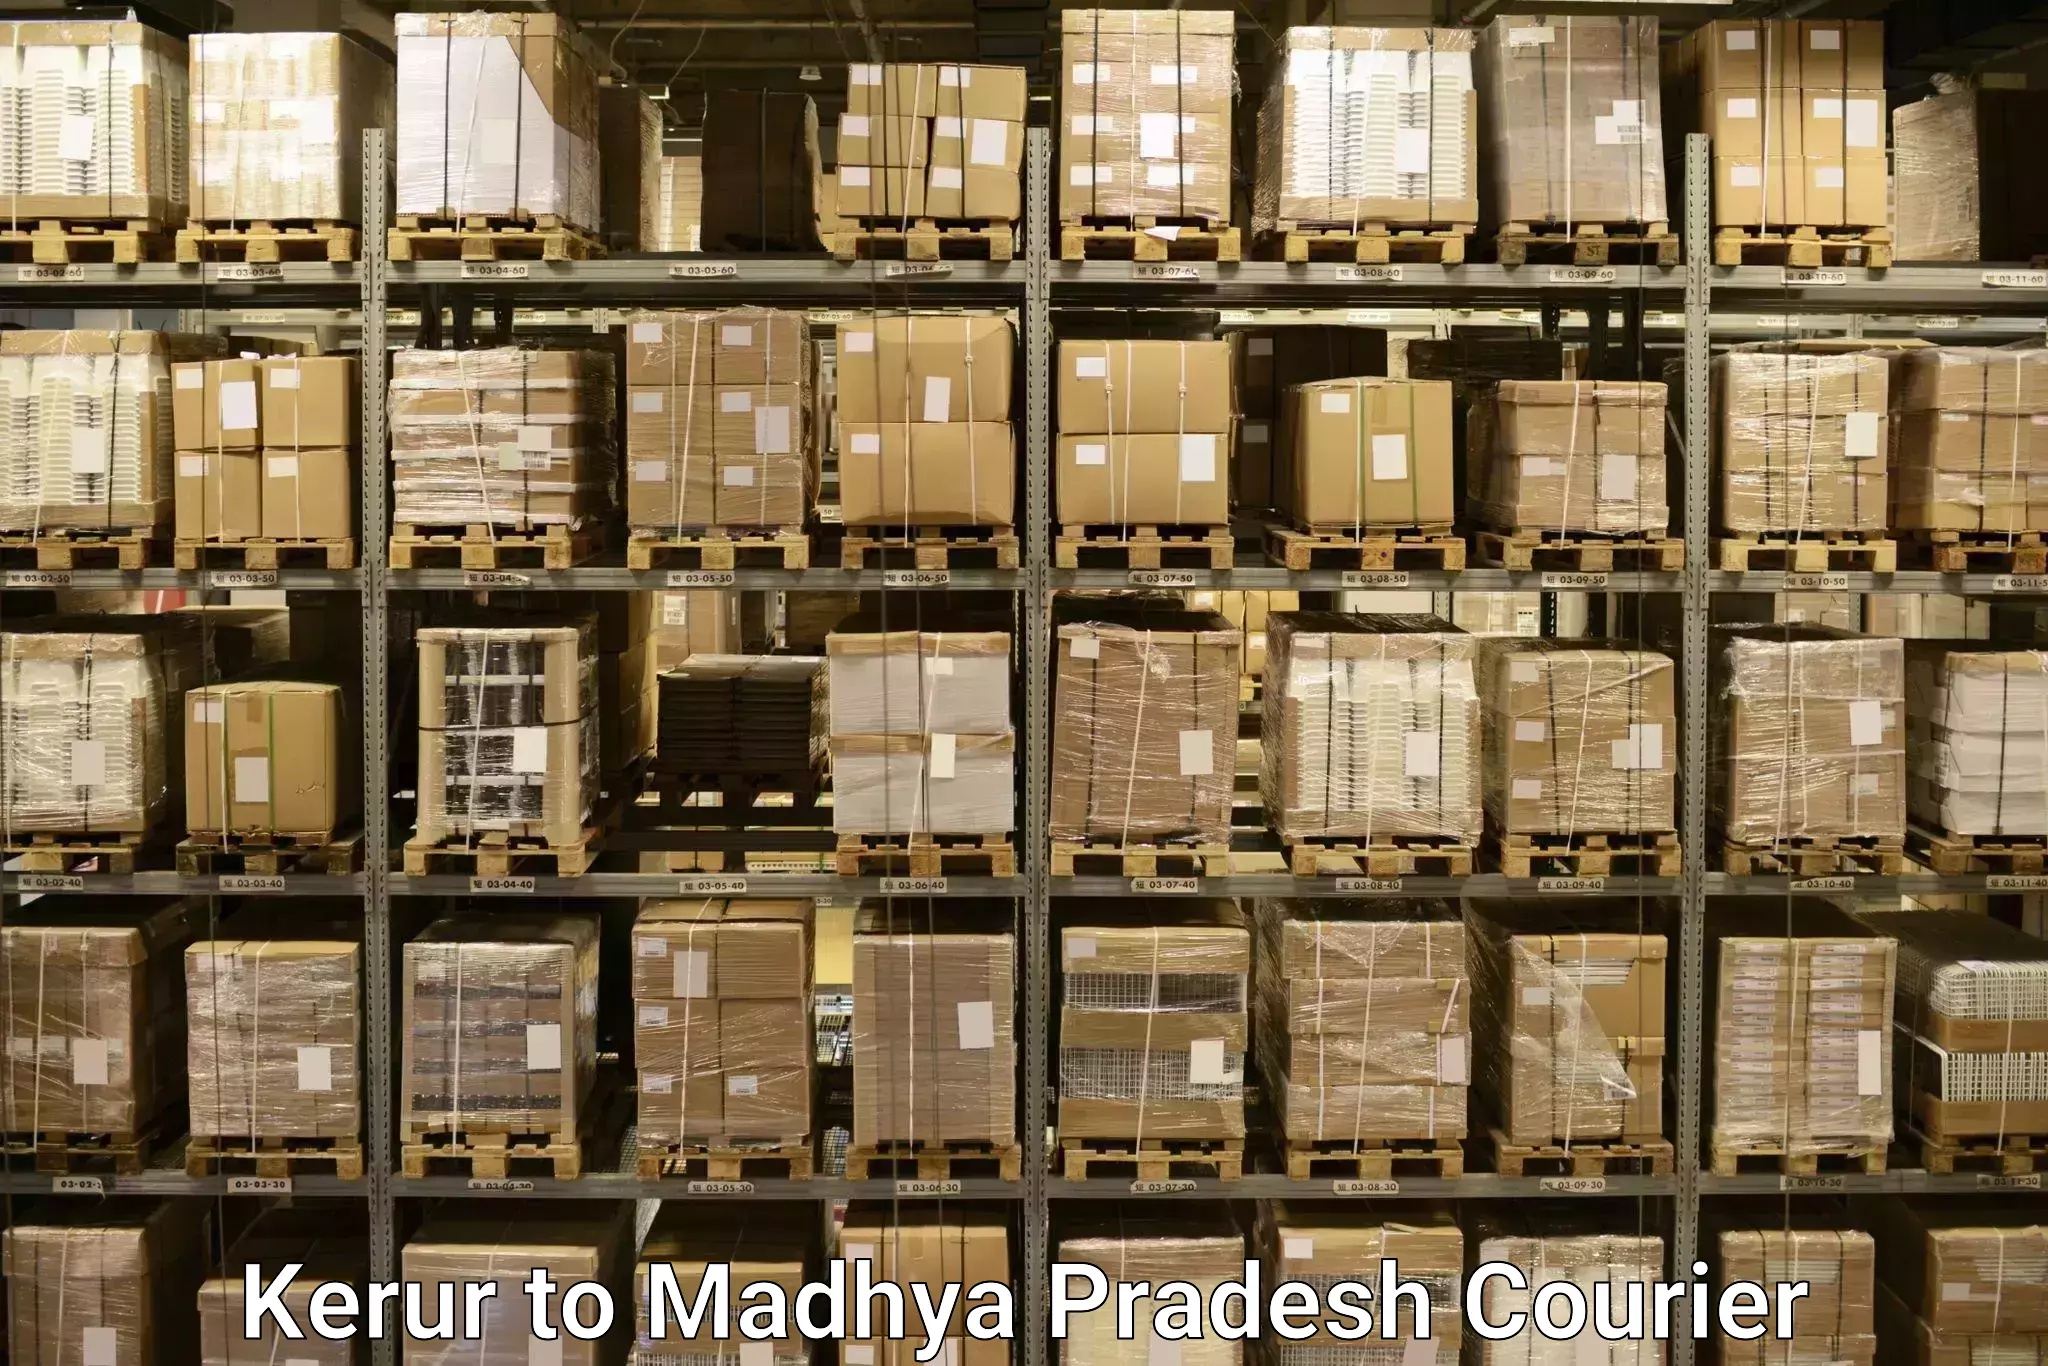 Baggage shipping schedule Kerur to Madhya Pradesh